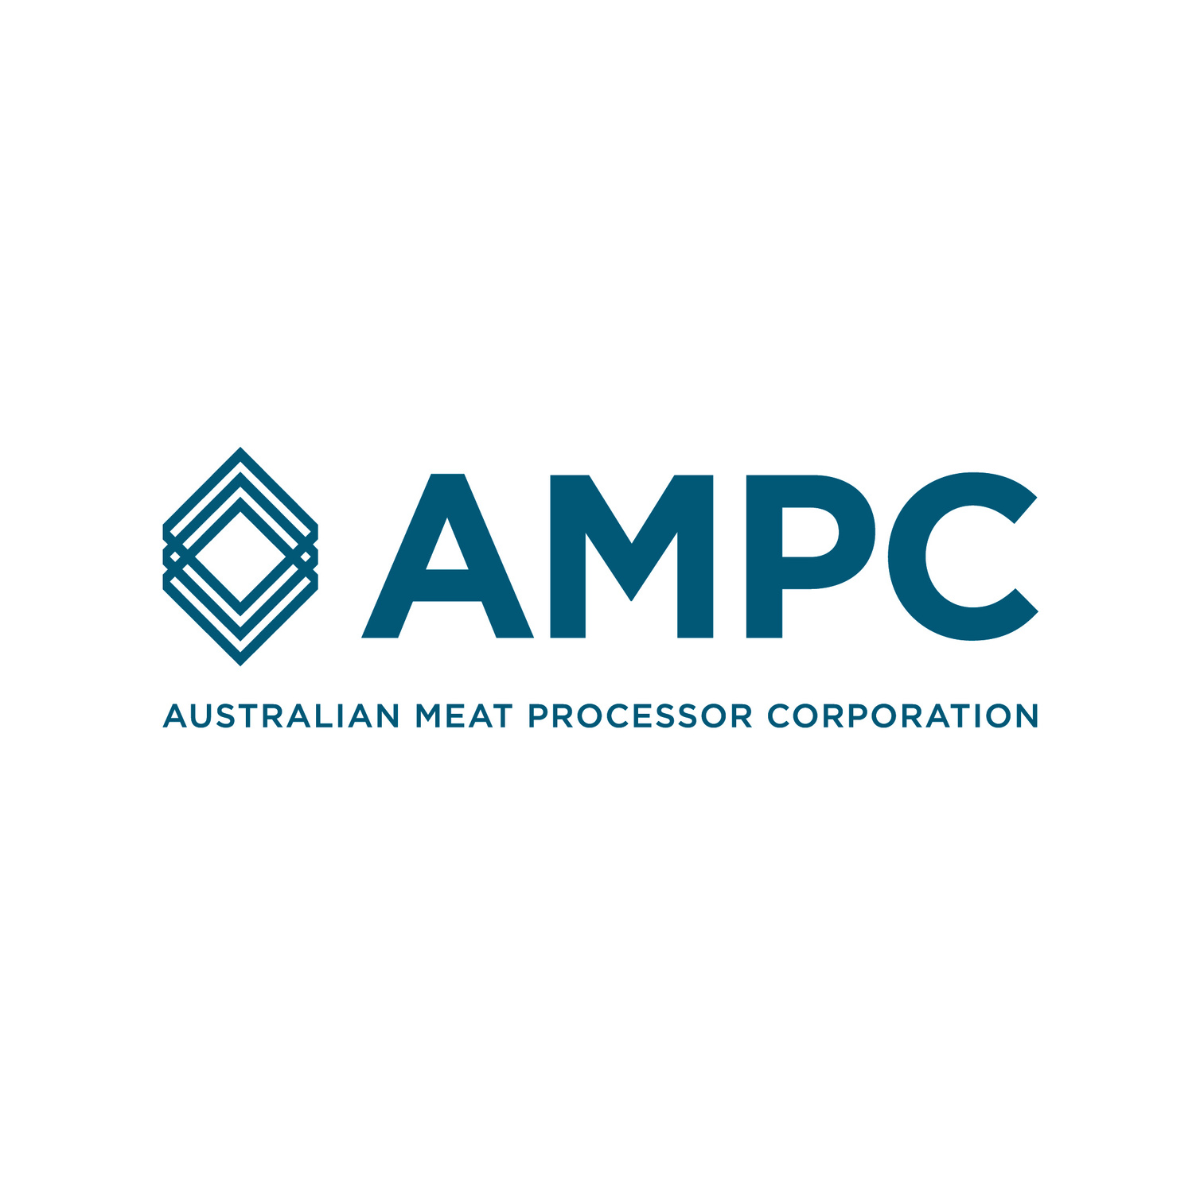 Australian Meat Processor Corporation